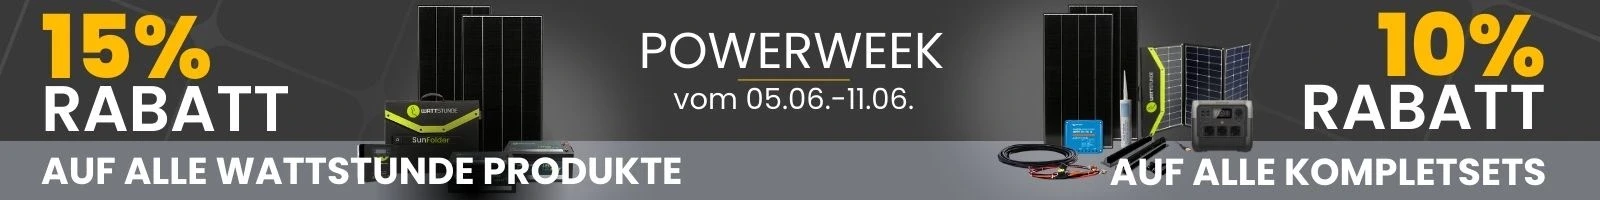 Power Week - Wattstunde Produkte und Komplettsets reduziert